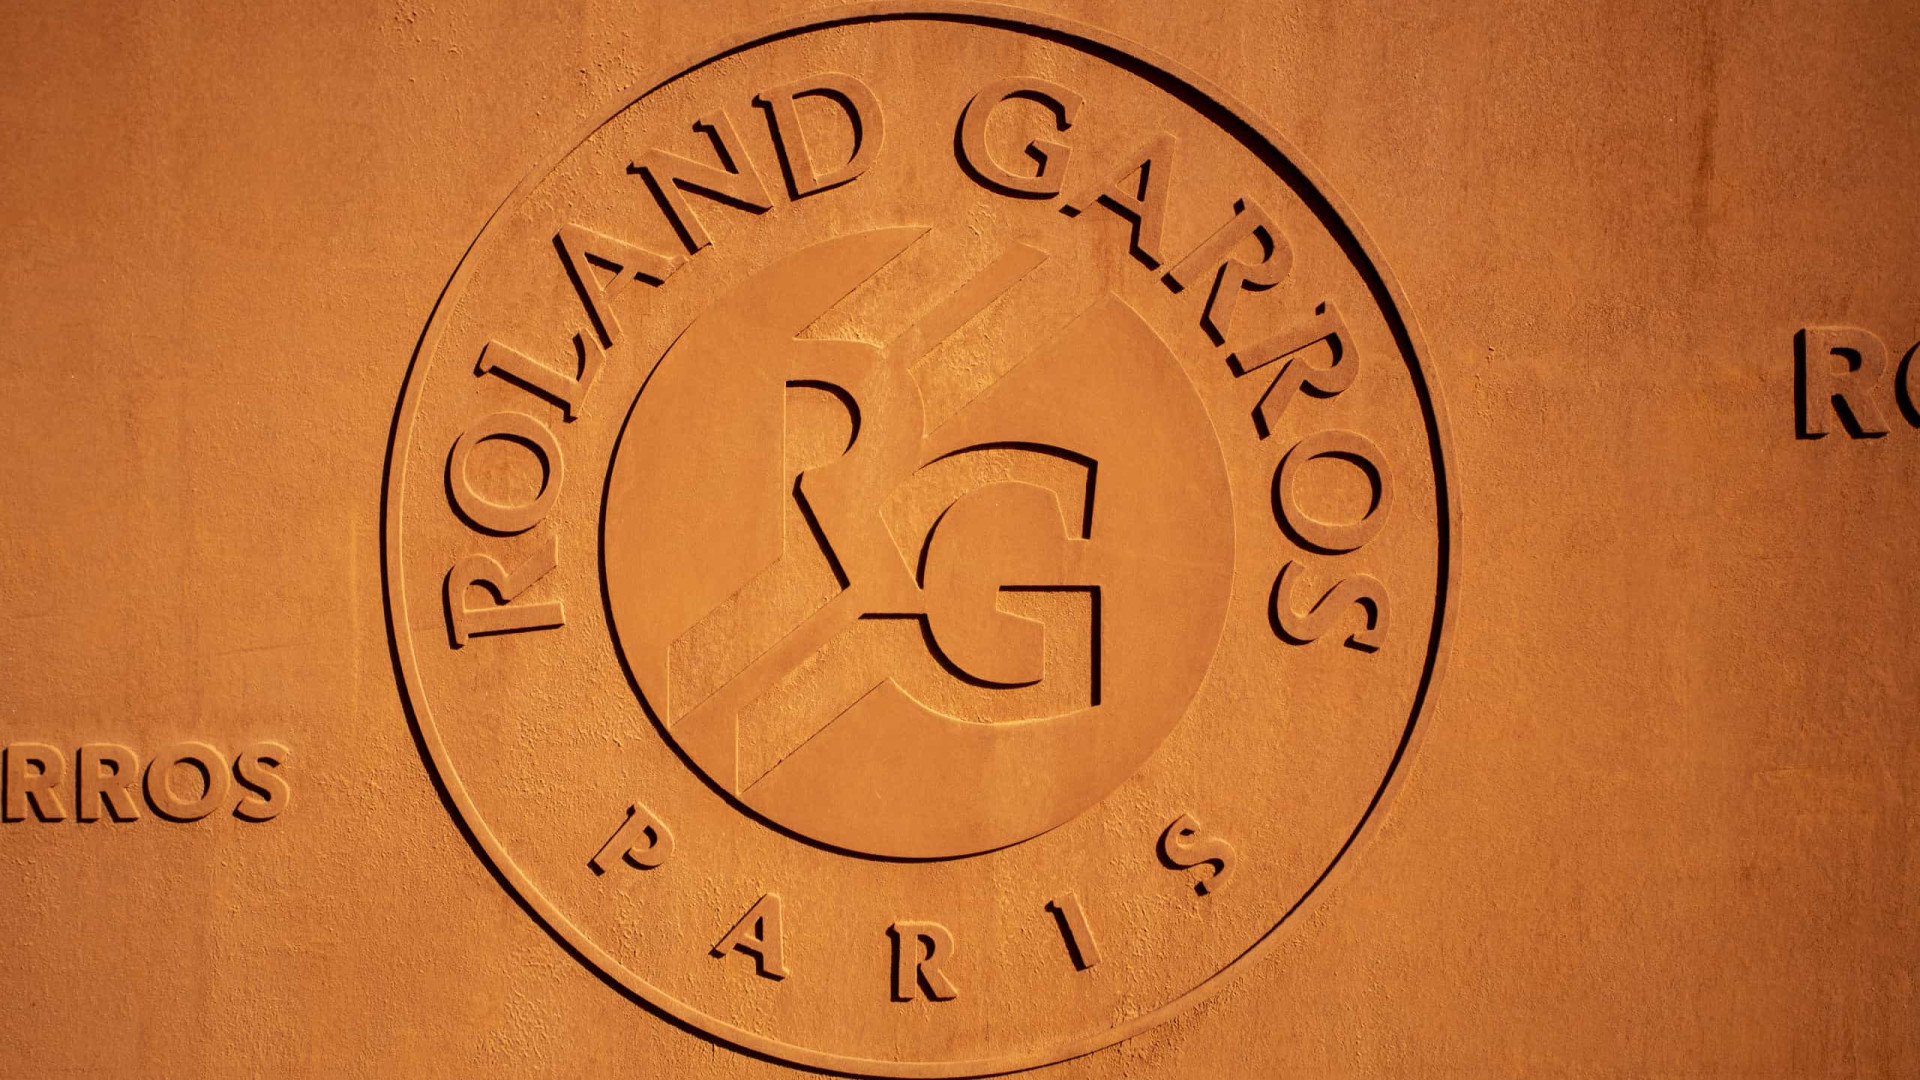 Roland Garros começa neste domingo; veja as principais histórias para acompanhar